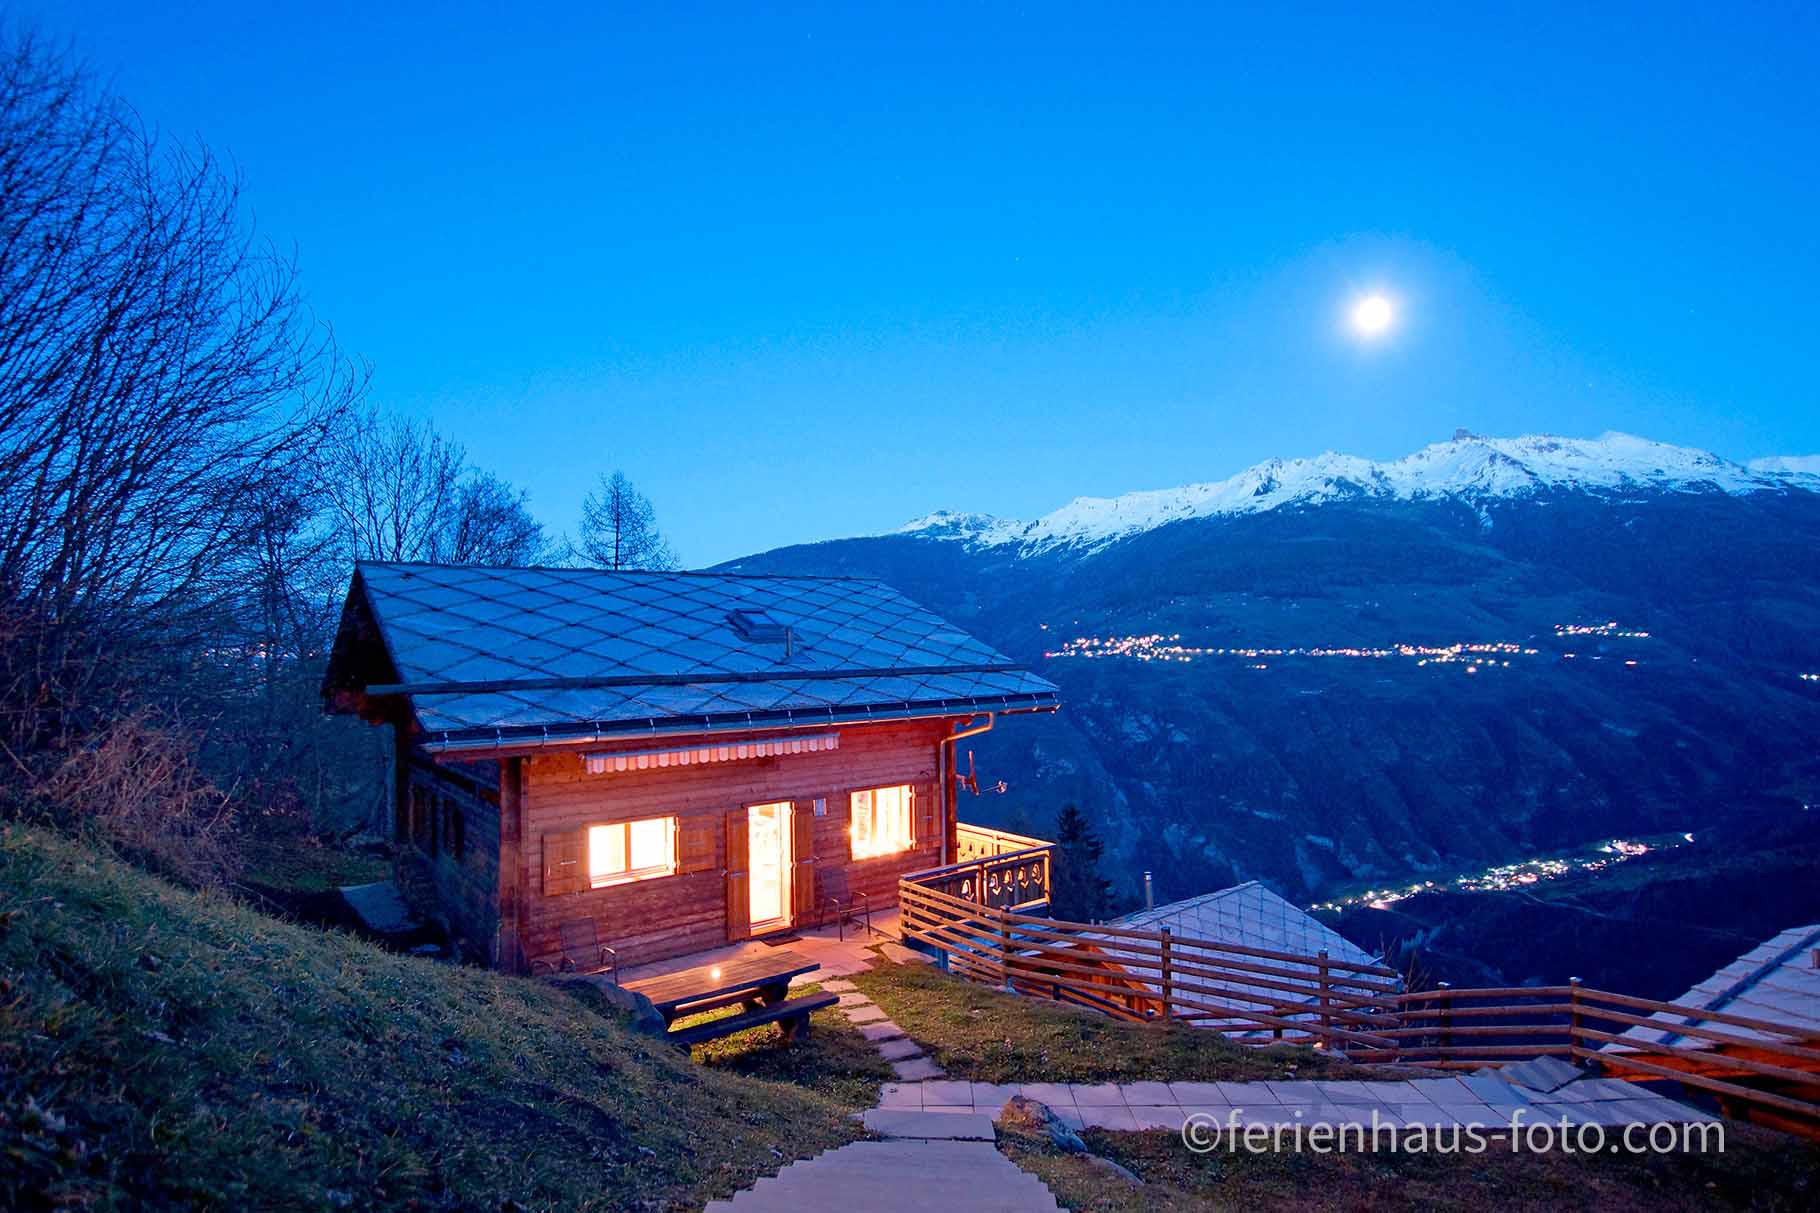 ferienhaus foto bei nacht mit mond blauer himmel